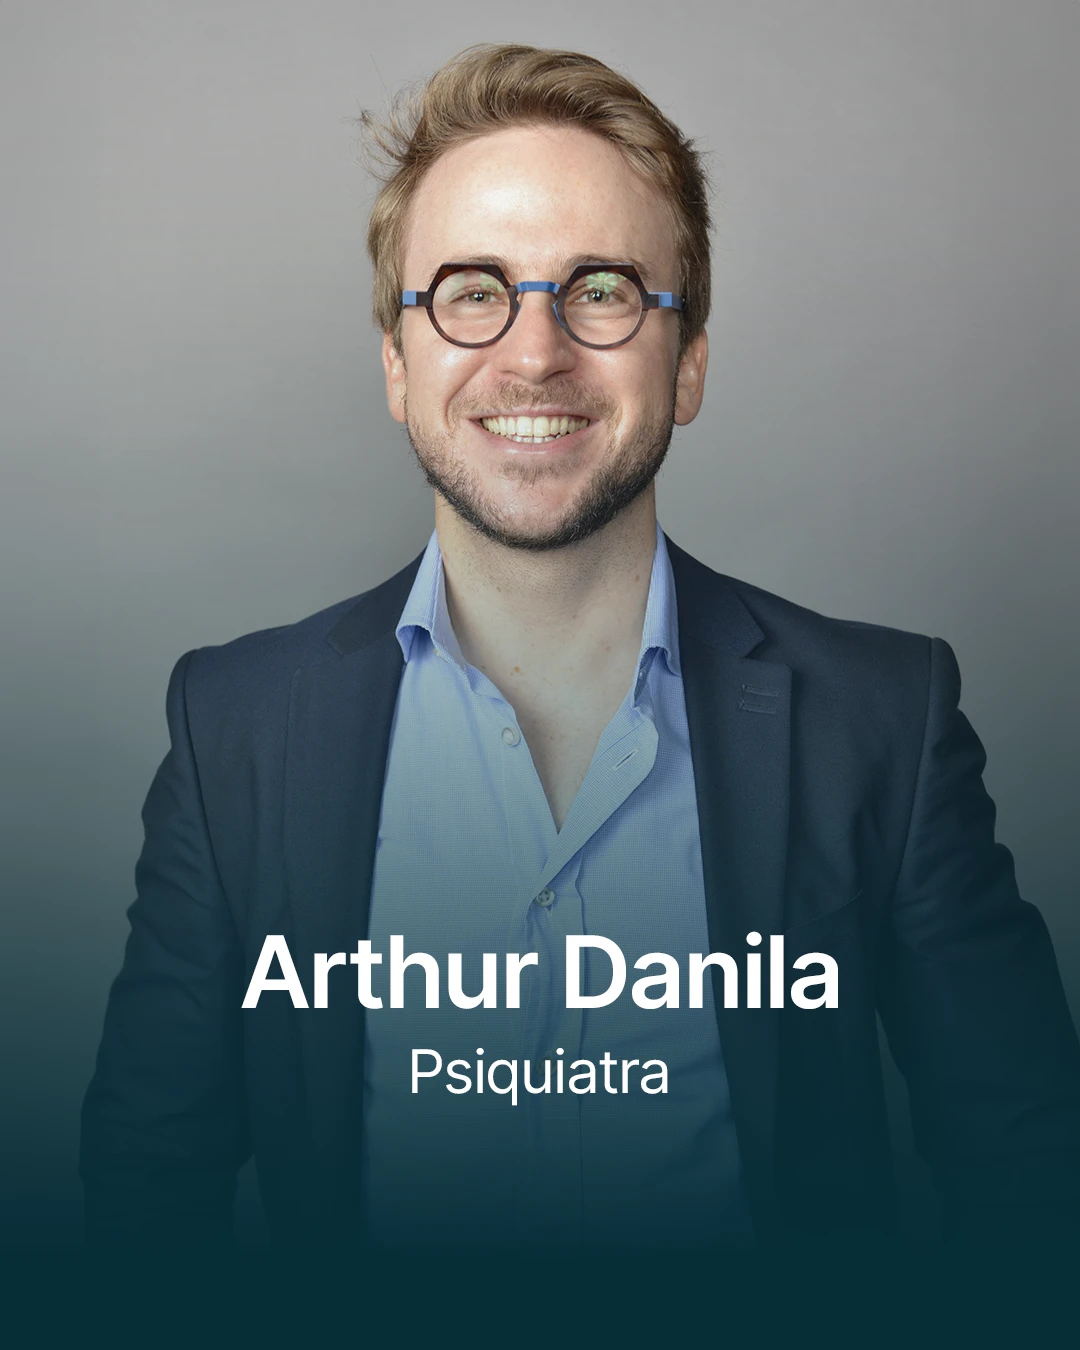 Arthur Danila